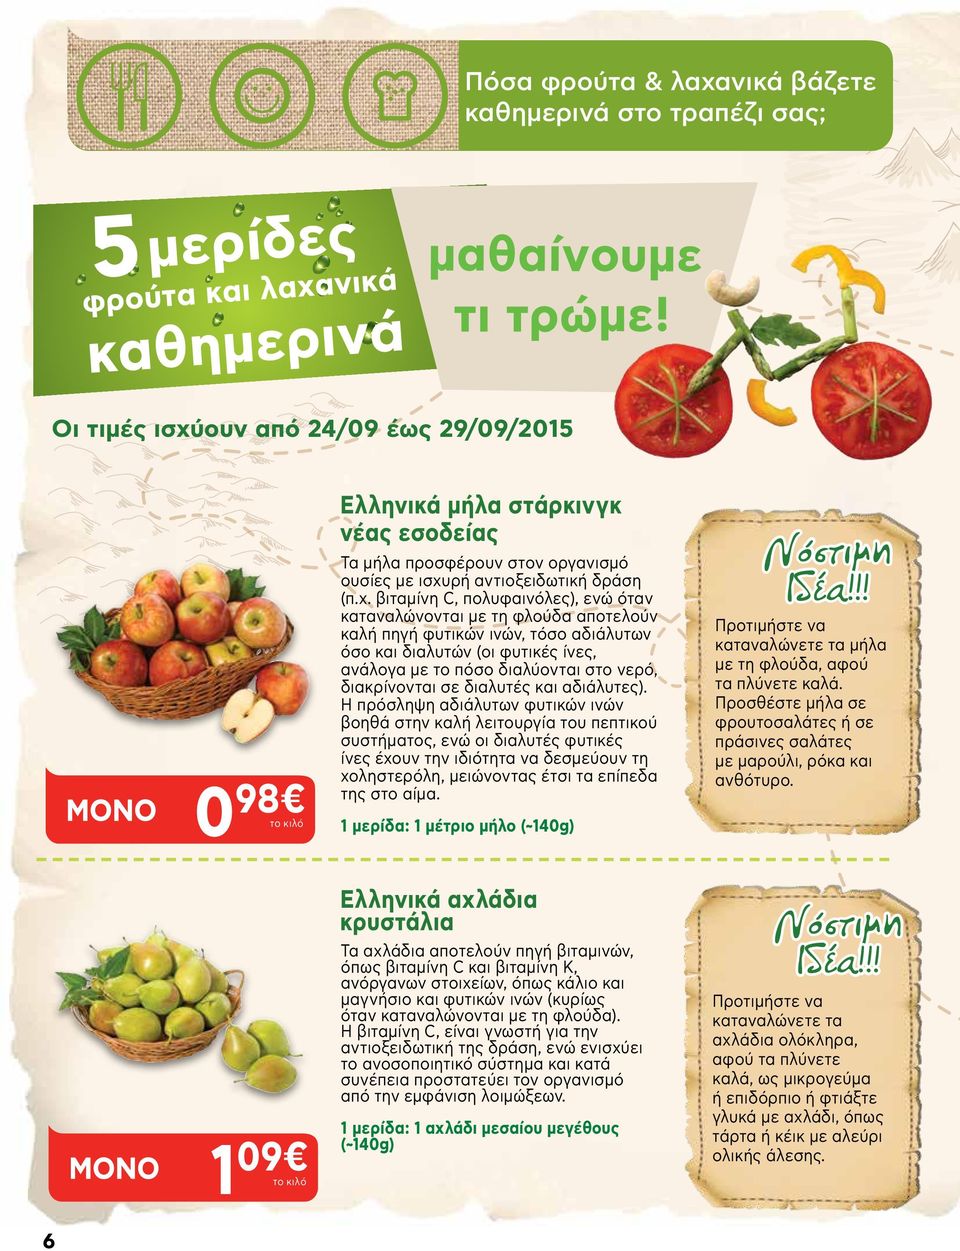 ουν από 24/09 έως 29/09/2015 0 98 1 09 Ελληνικά μήλα στάρκινγκ νέας εσοδείας Τα μήλα προσφέρουν στον οργανισμό ουσίες με ισχυ